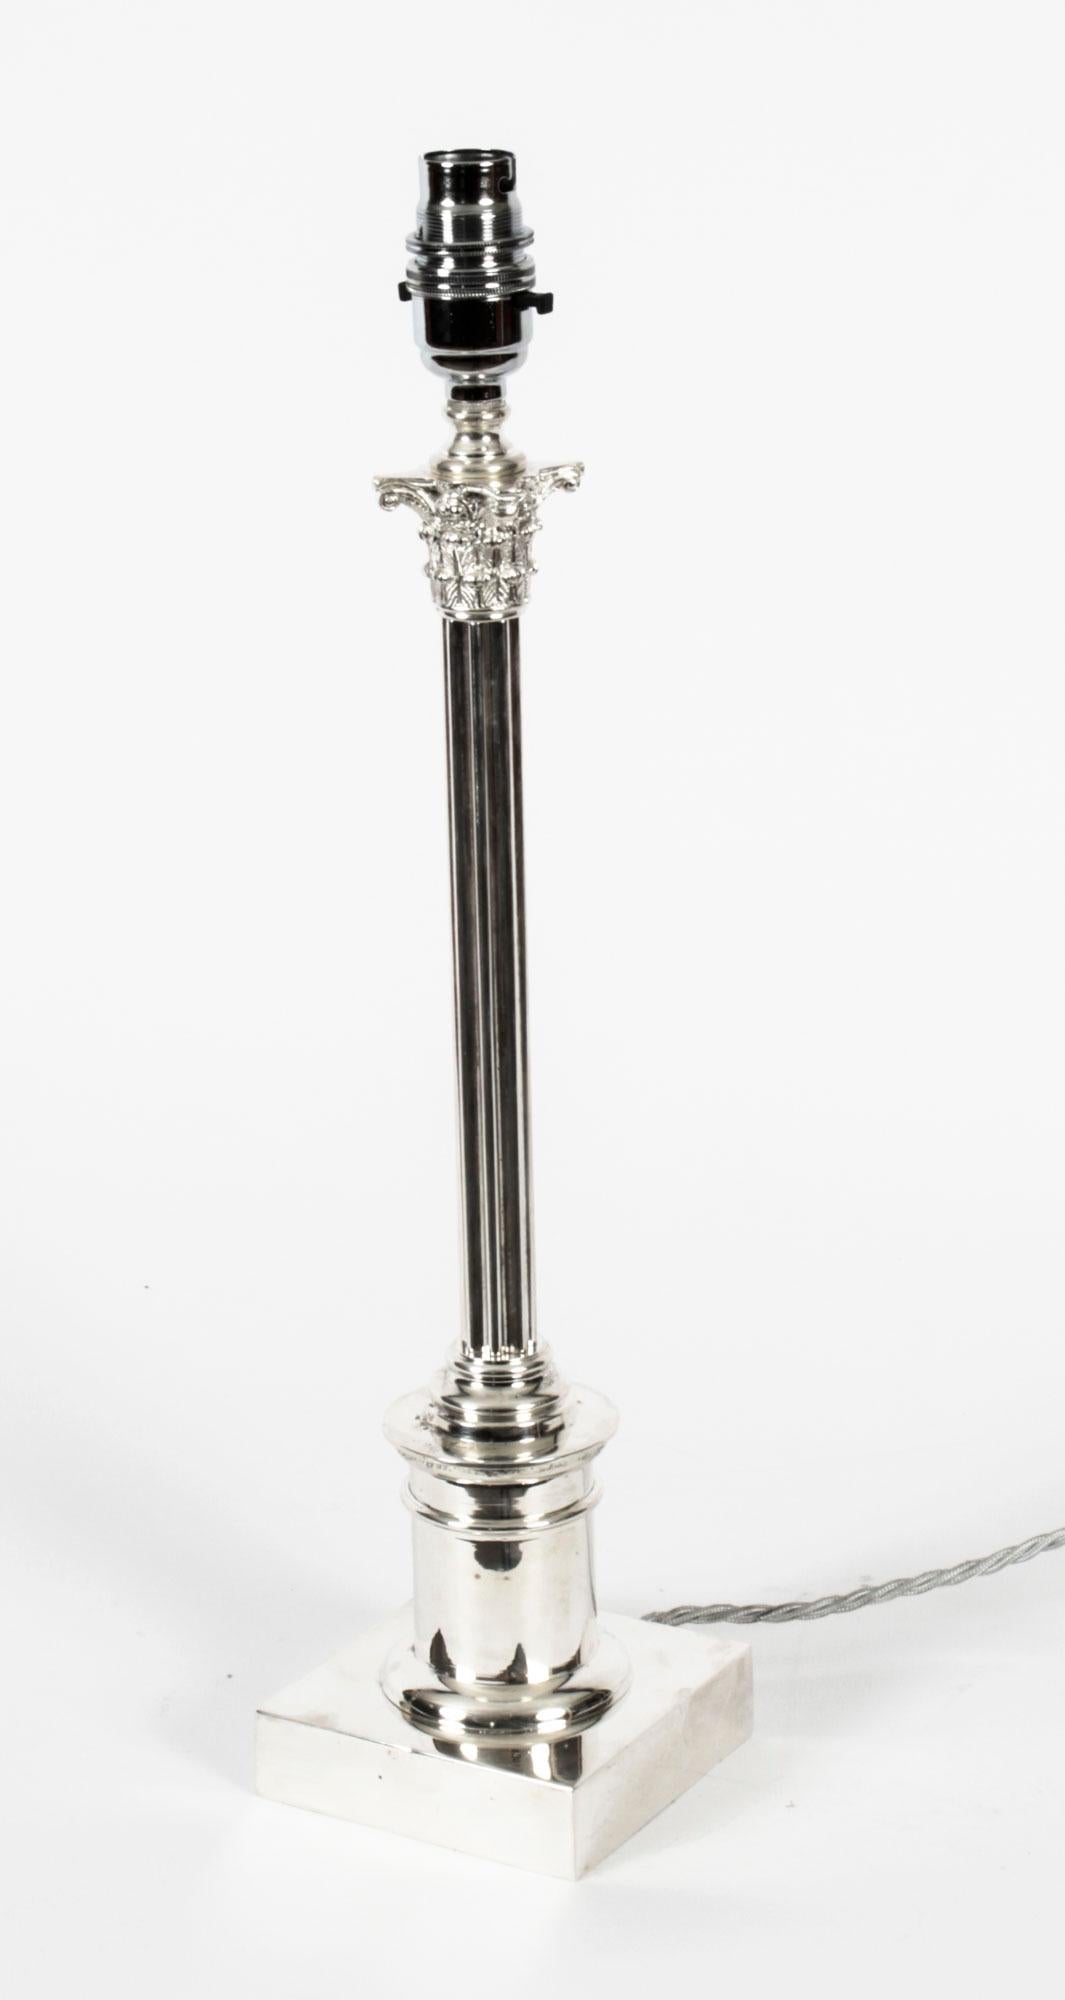 Impresionante lámpara de sobremesa eduardiana de columna corintia chapada en plata, fechada hacia 1910.
 
Presenta un capitel corintio clásico decorado con hojas de acanto y anthemion con un fino fuste cilíndrico estriado sobre un pedestal